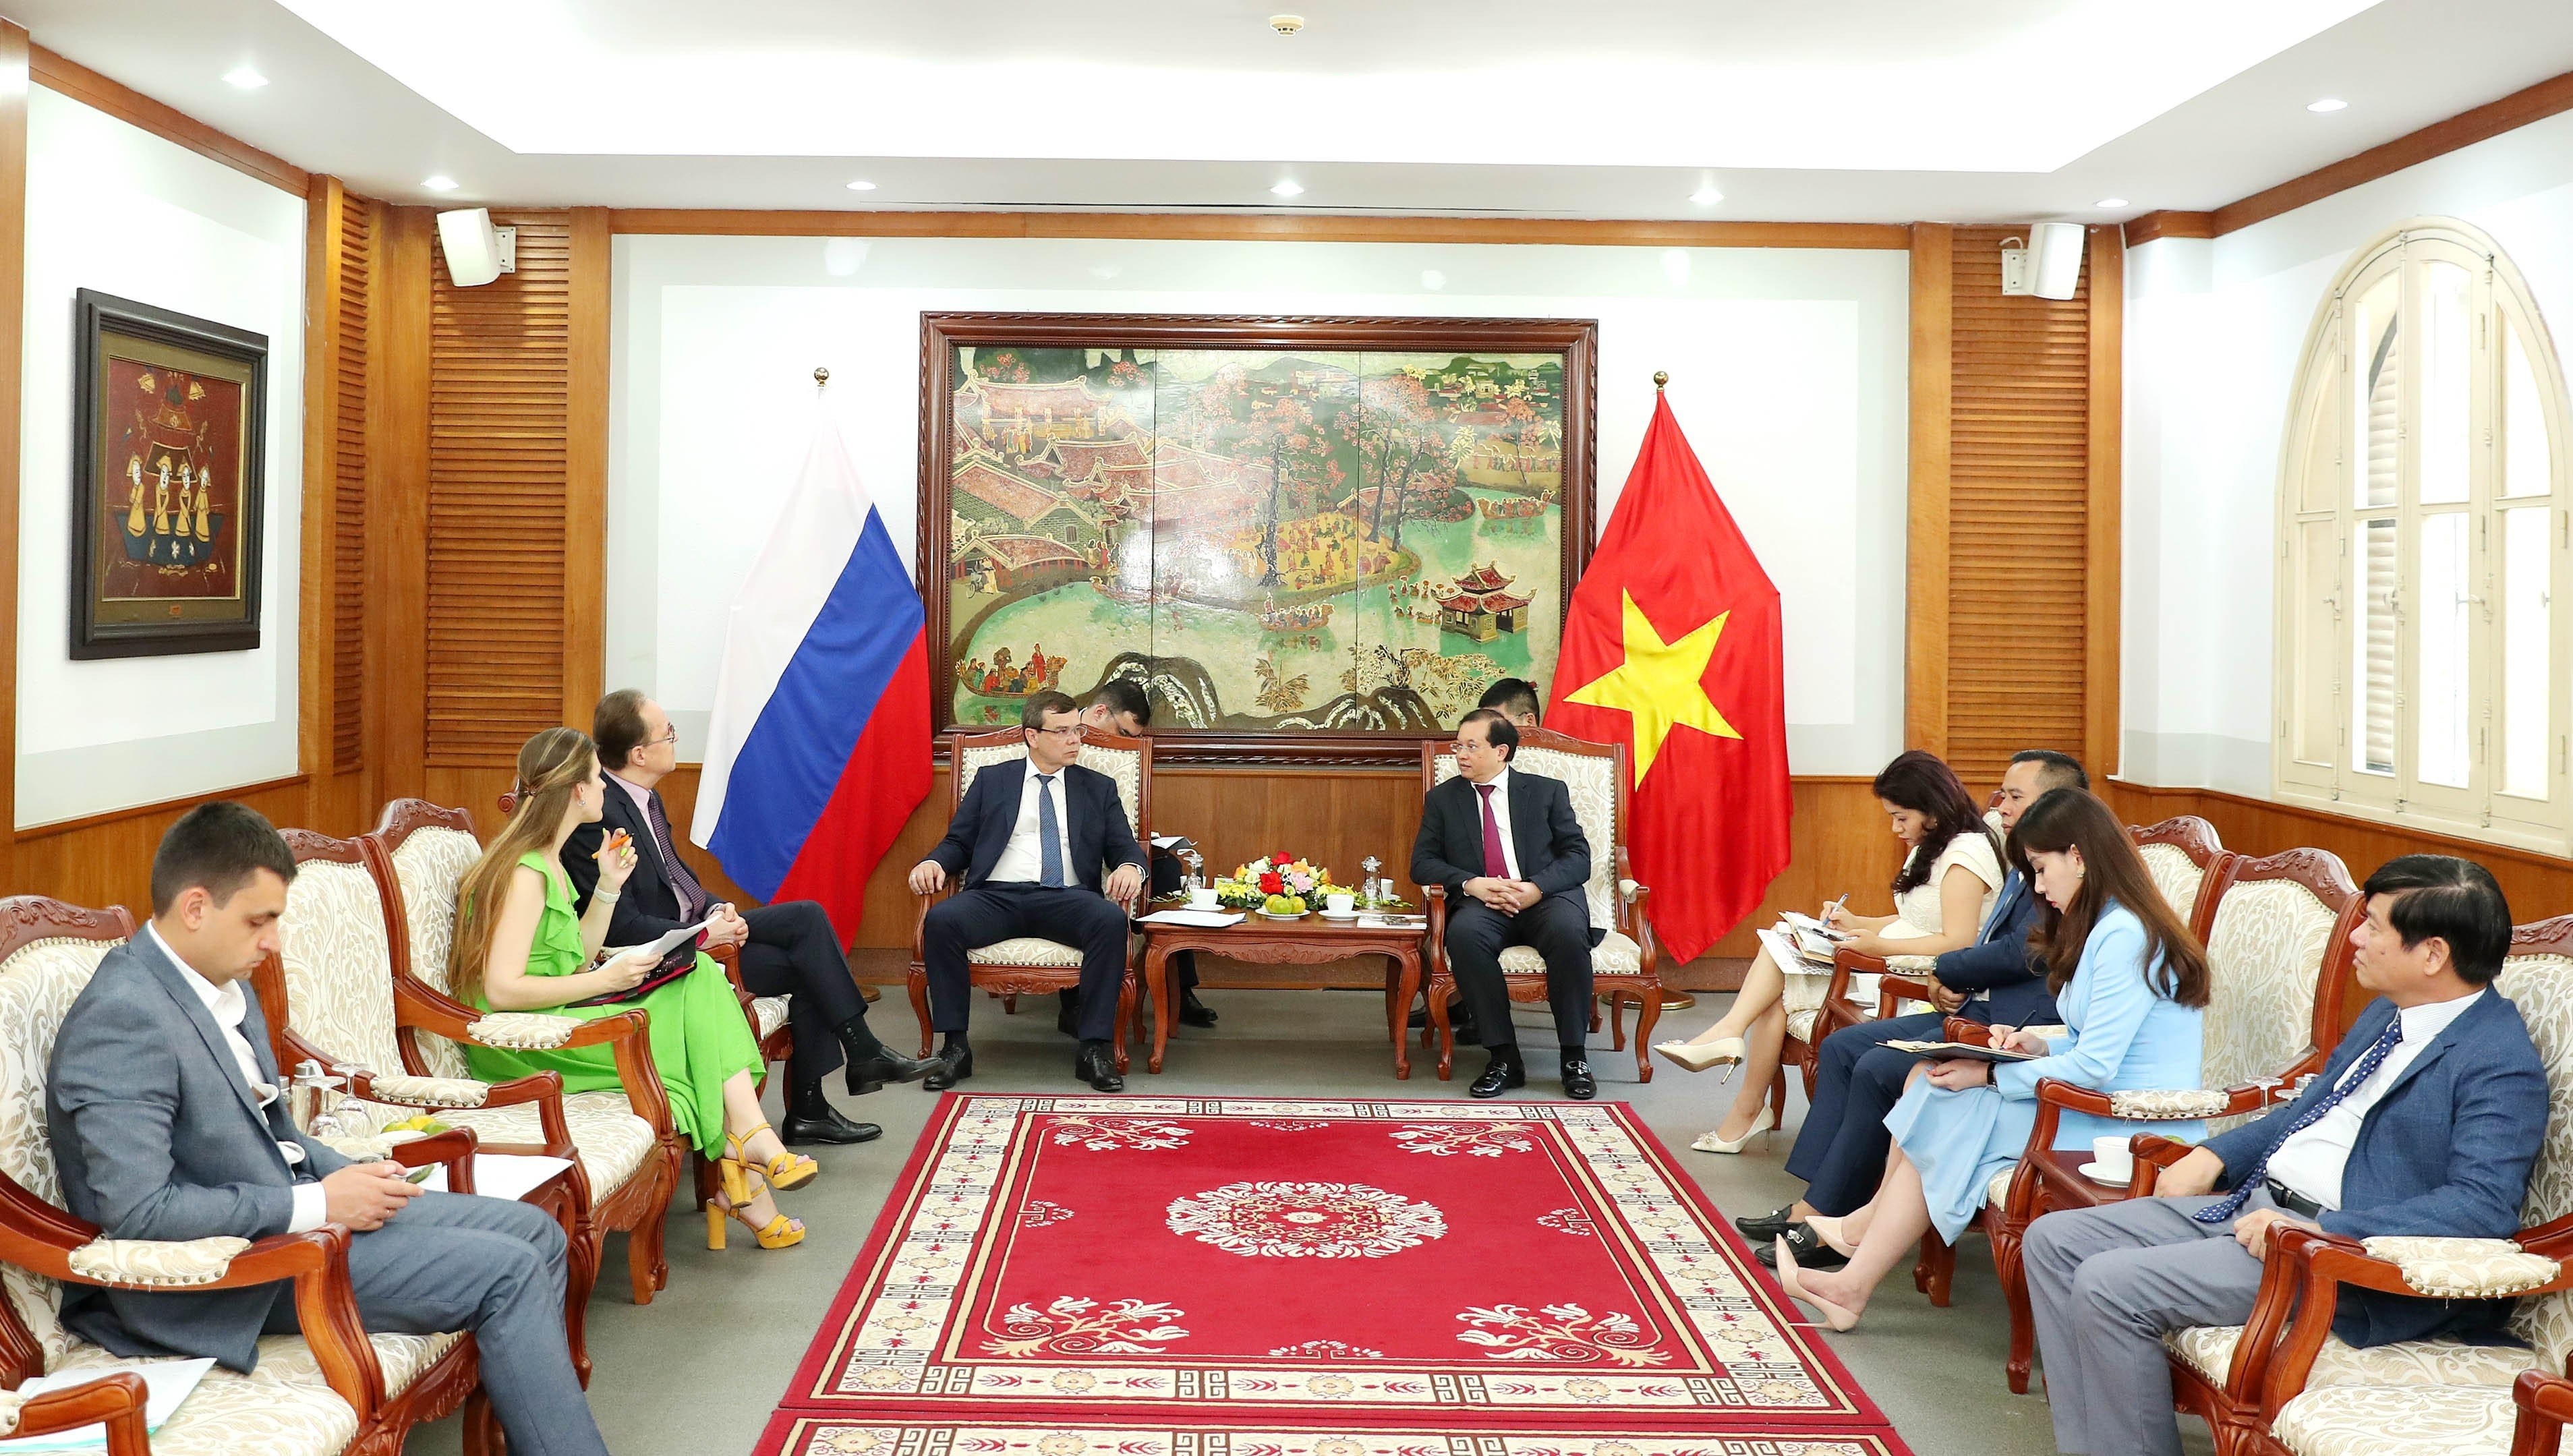 hứ trưởng Bộ Văn hóa, Thể thao và Du lịch Việt Nam Tạ Quang Đông đã có buổi tiếp và làm việc với Thứ trưởng Bộ Văn hóa Nga Osintsev Vladimir